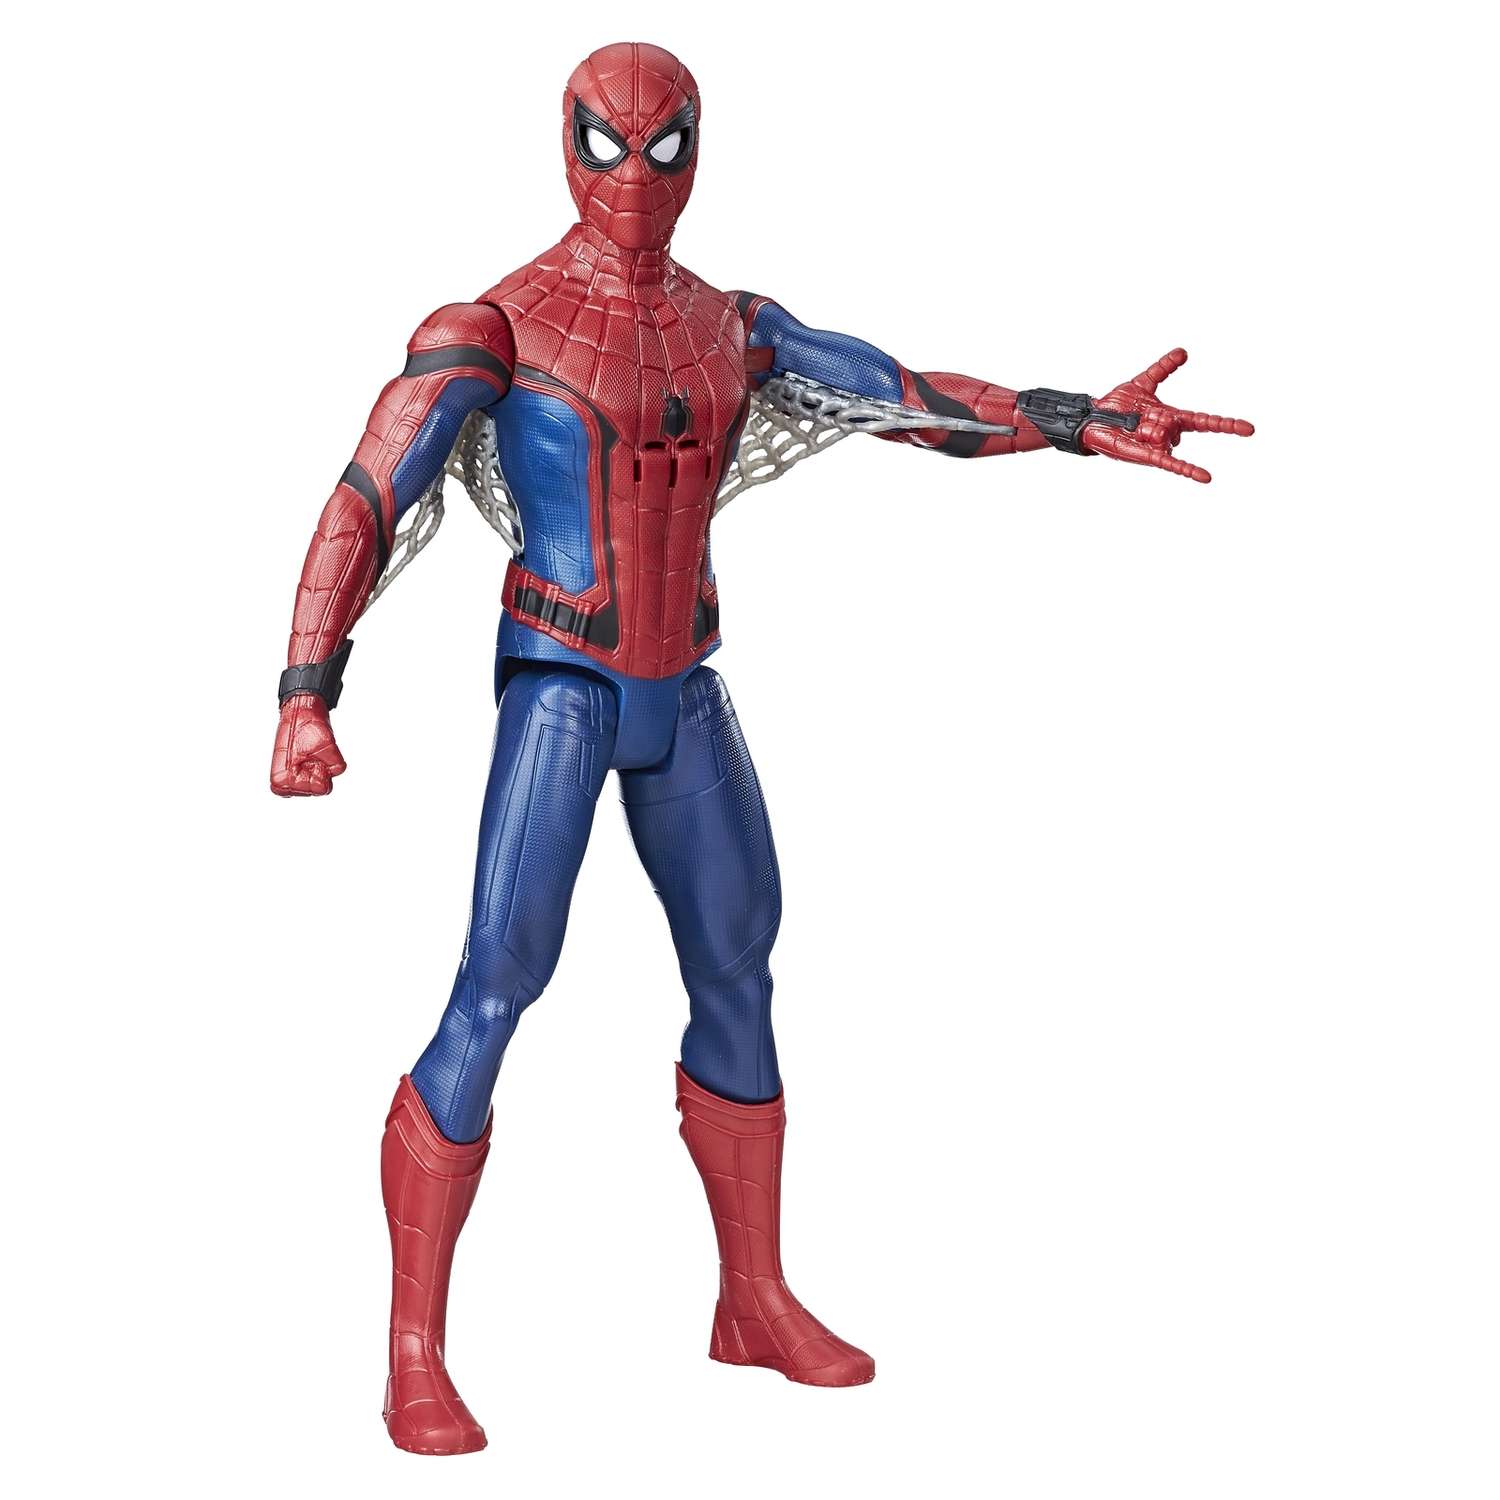 Интерактивная фигурка Человек-Паук (Spider-man) Человека-Паука 30 см со звуковыми и световыми эффектами - фото 1